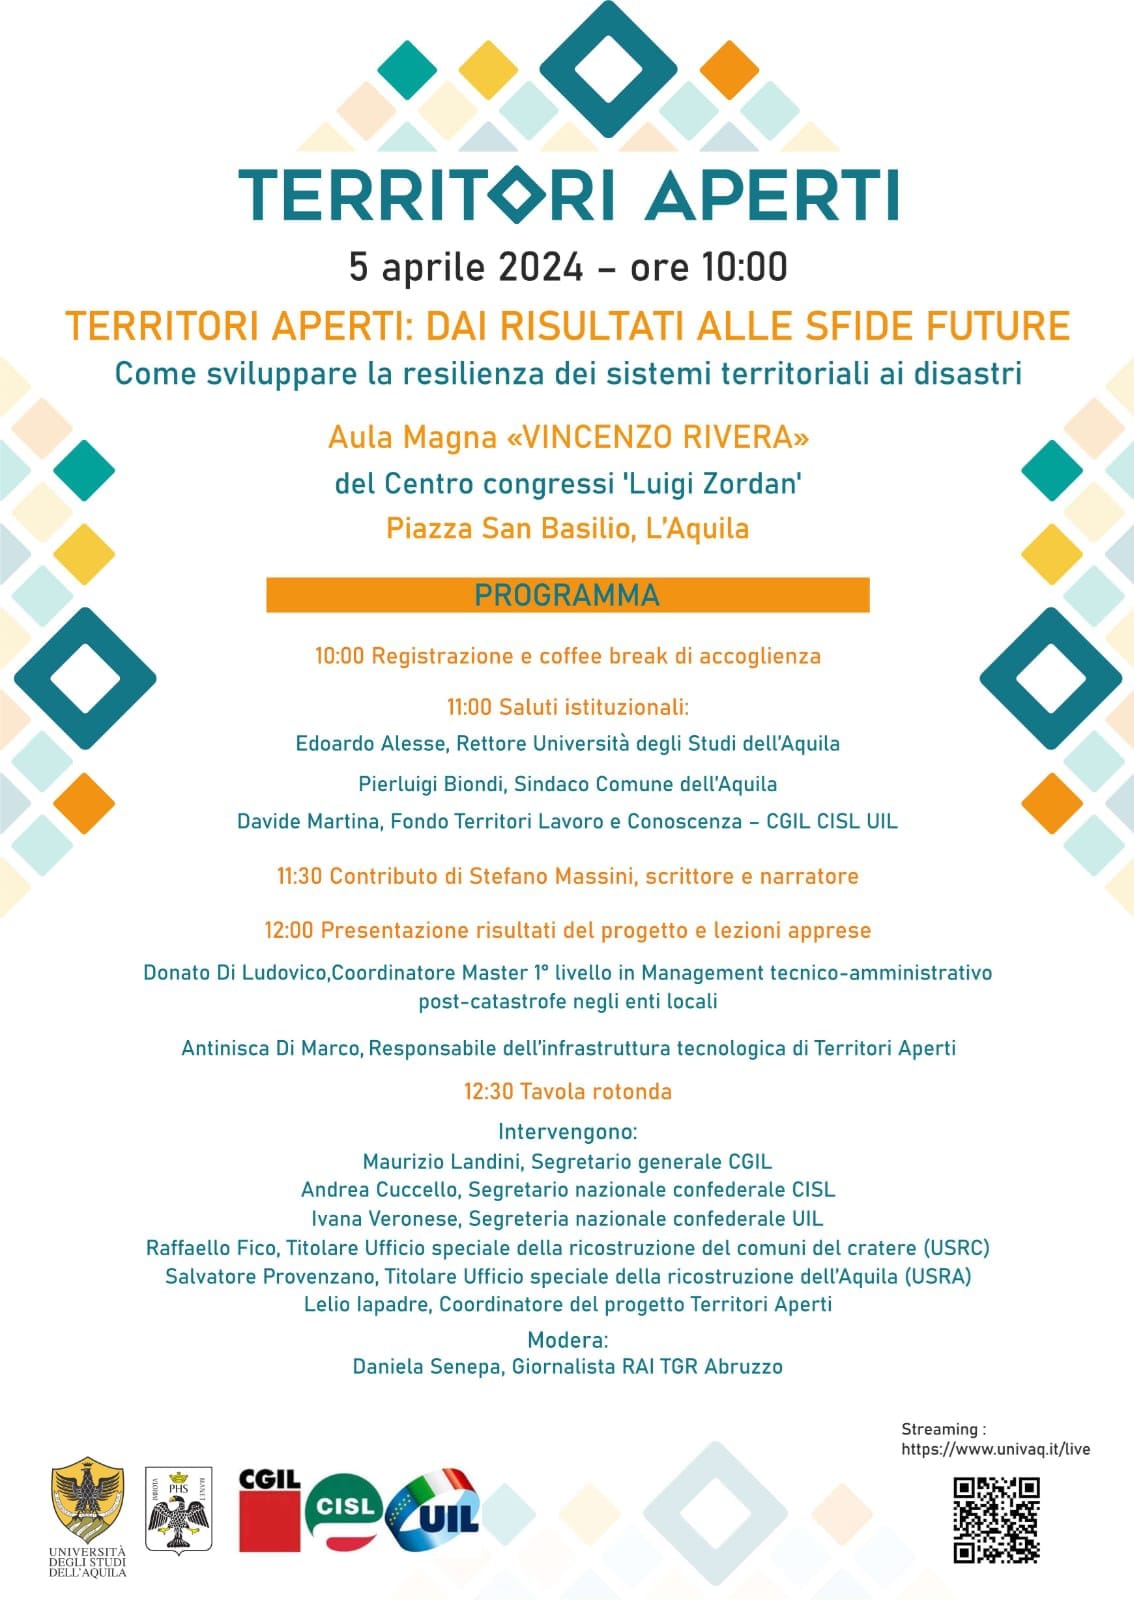 5 APRILE 2024, la CGIL Abruzzo Molise con MAURIZIO LANDINI